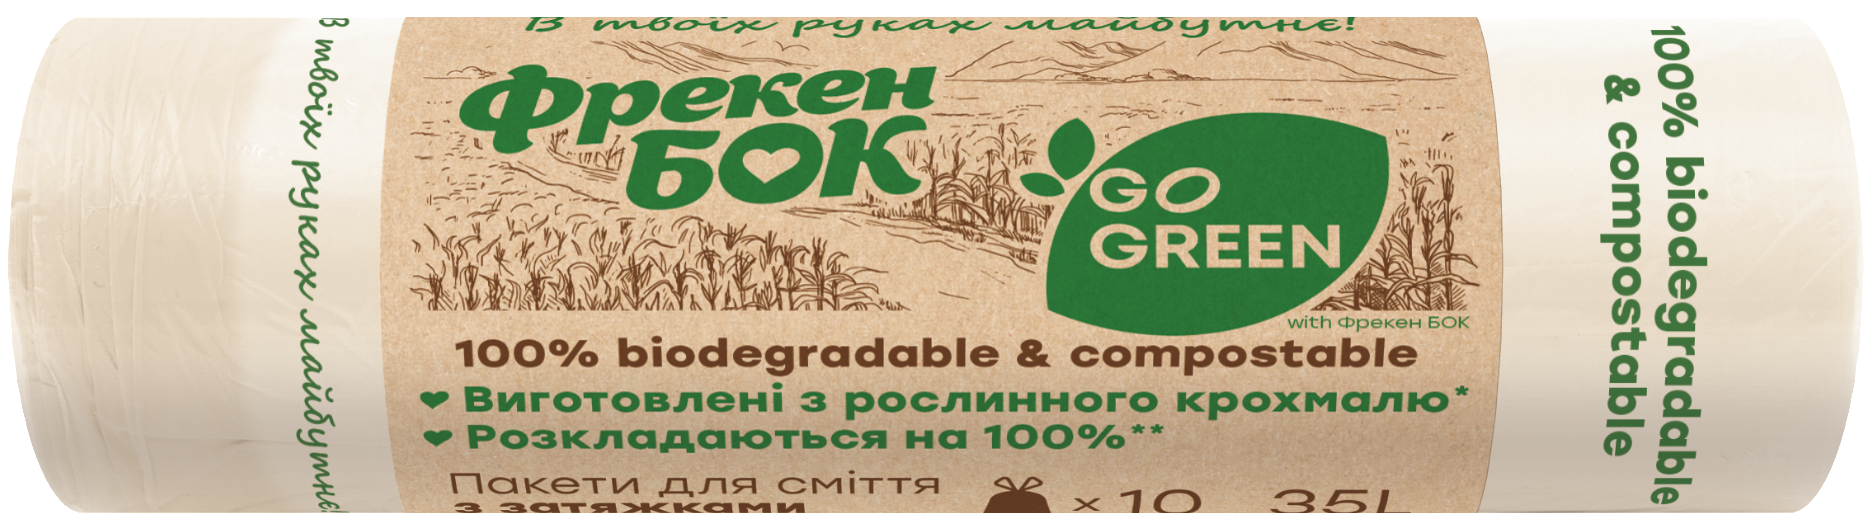 Пакети для сміття Фрекен Бок Go Green з затяжками, 35 л, 10 шт. - фото 1